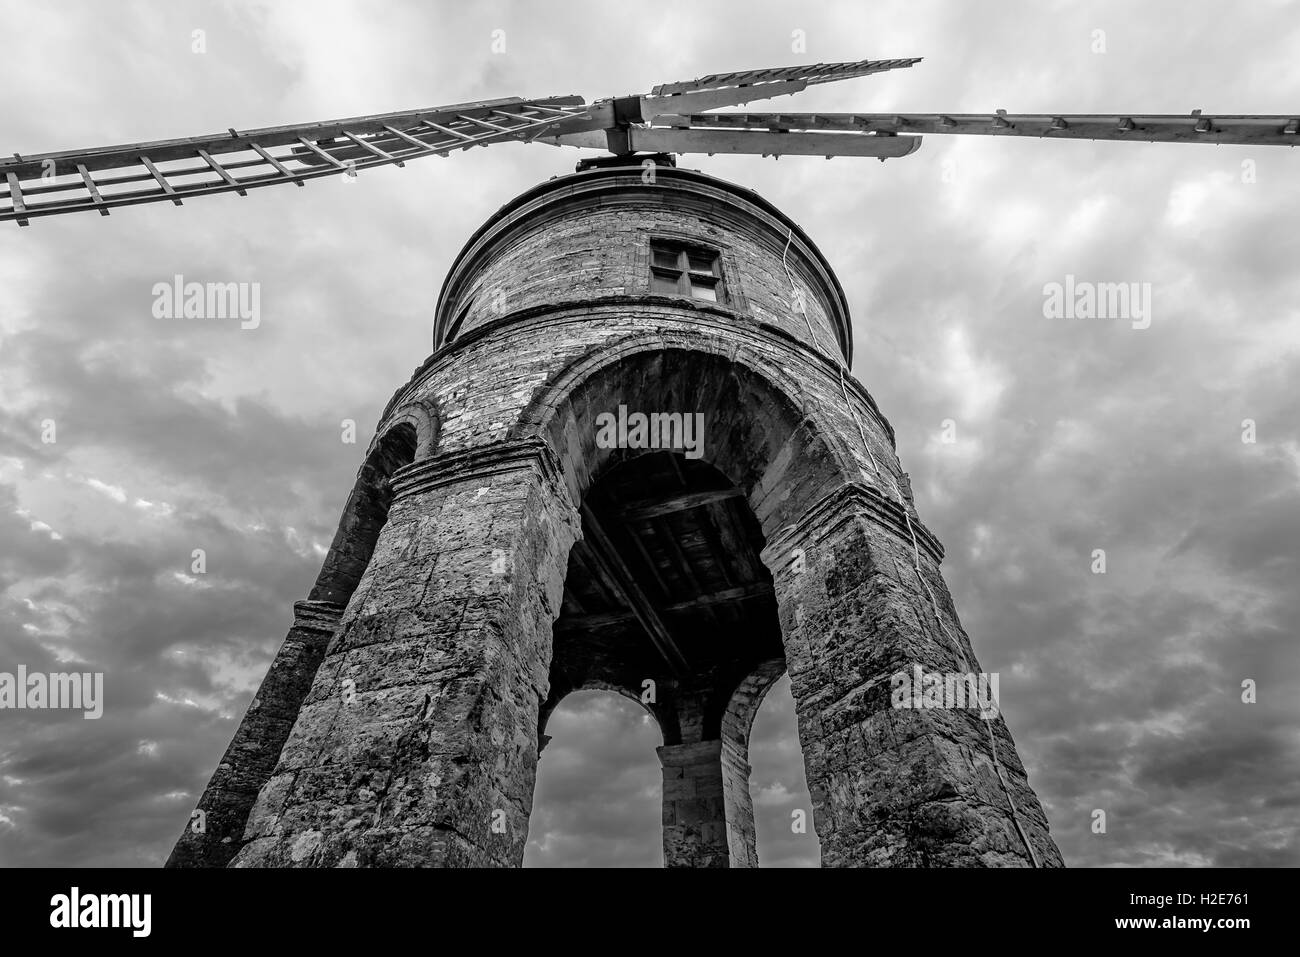 Moulin à vent de Chesterton par en dessous en noir et blanc de standing tall & fier dans un ciel orageux Banque D'Images